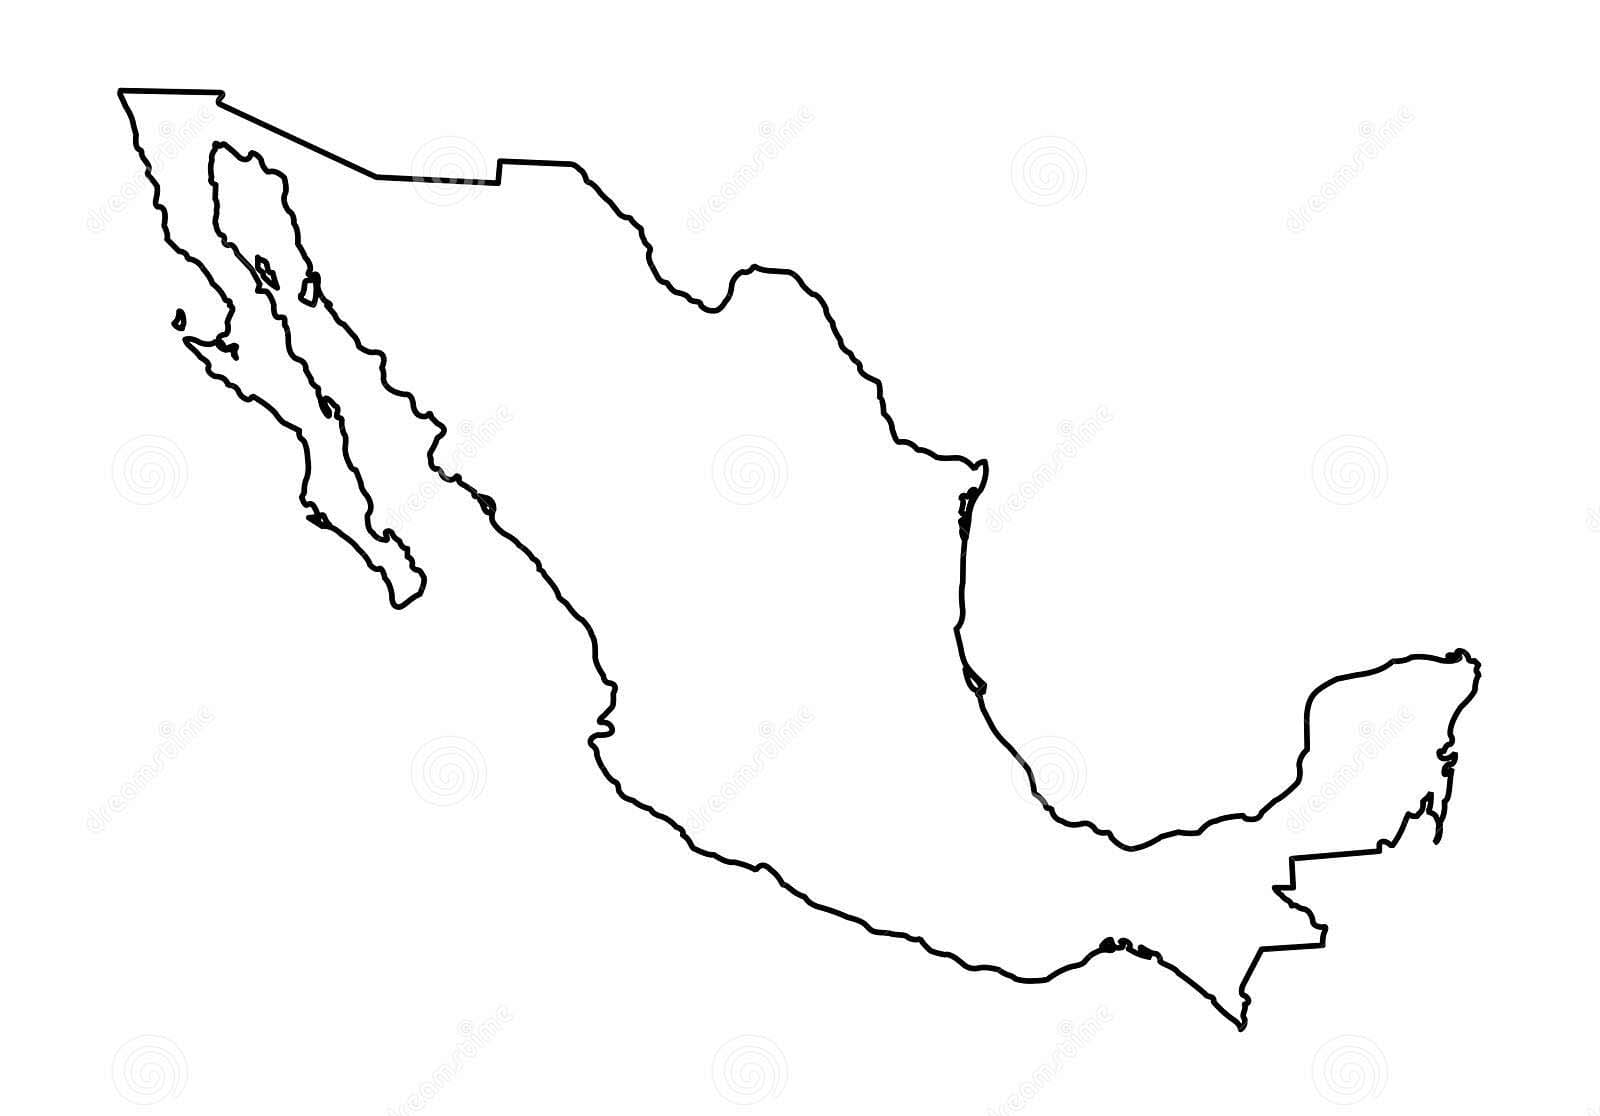 Mapa de Mexico